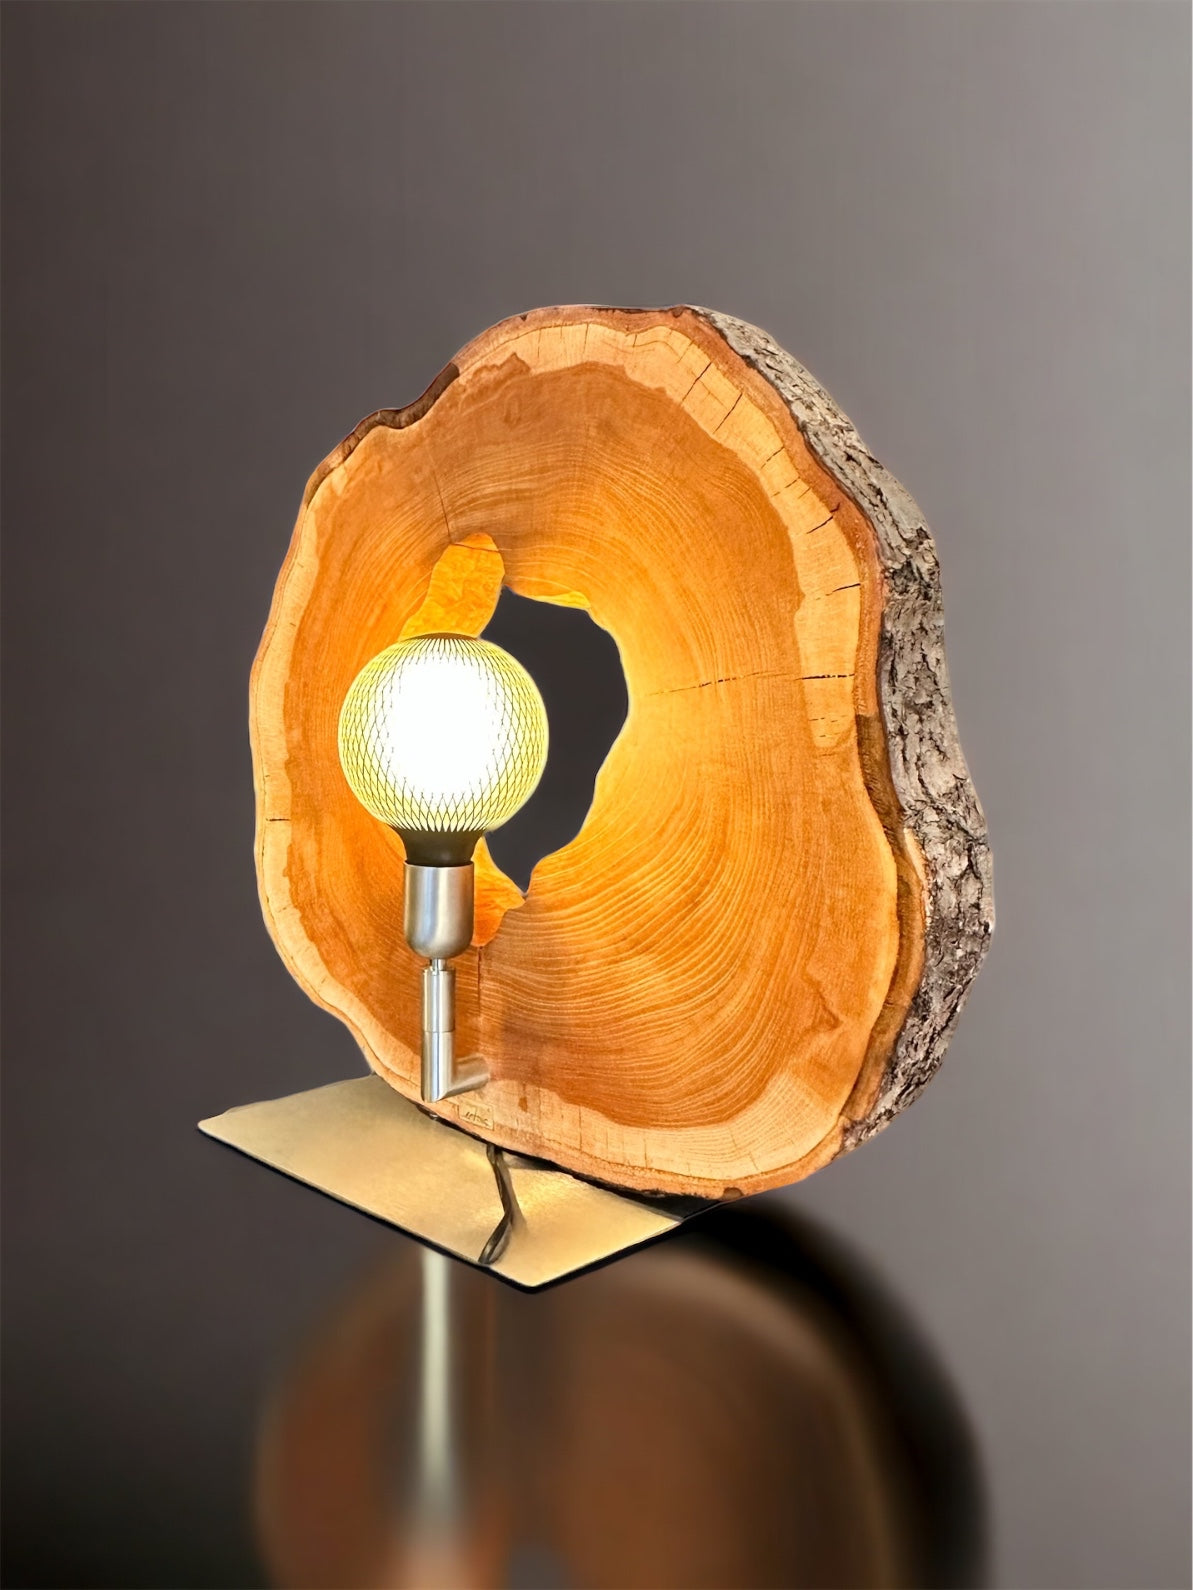 Aussergewöhnliche Unikat-Tischleuchte aus Kirschbaum mit LED Glühbirne –  Artnic Manufaktur